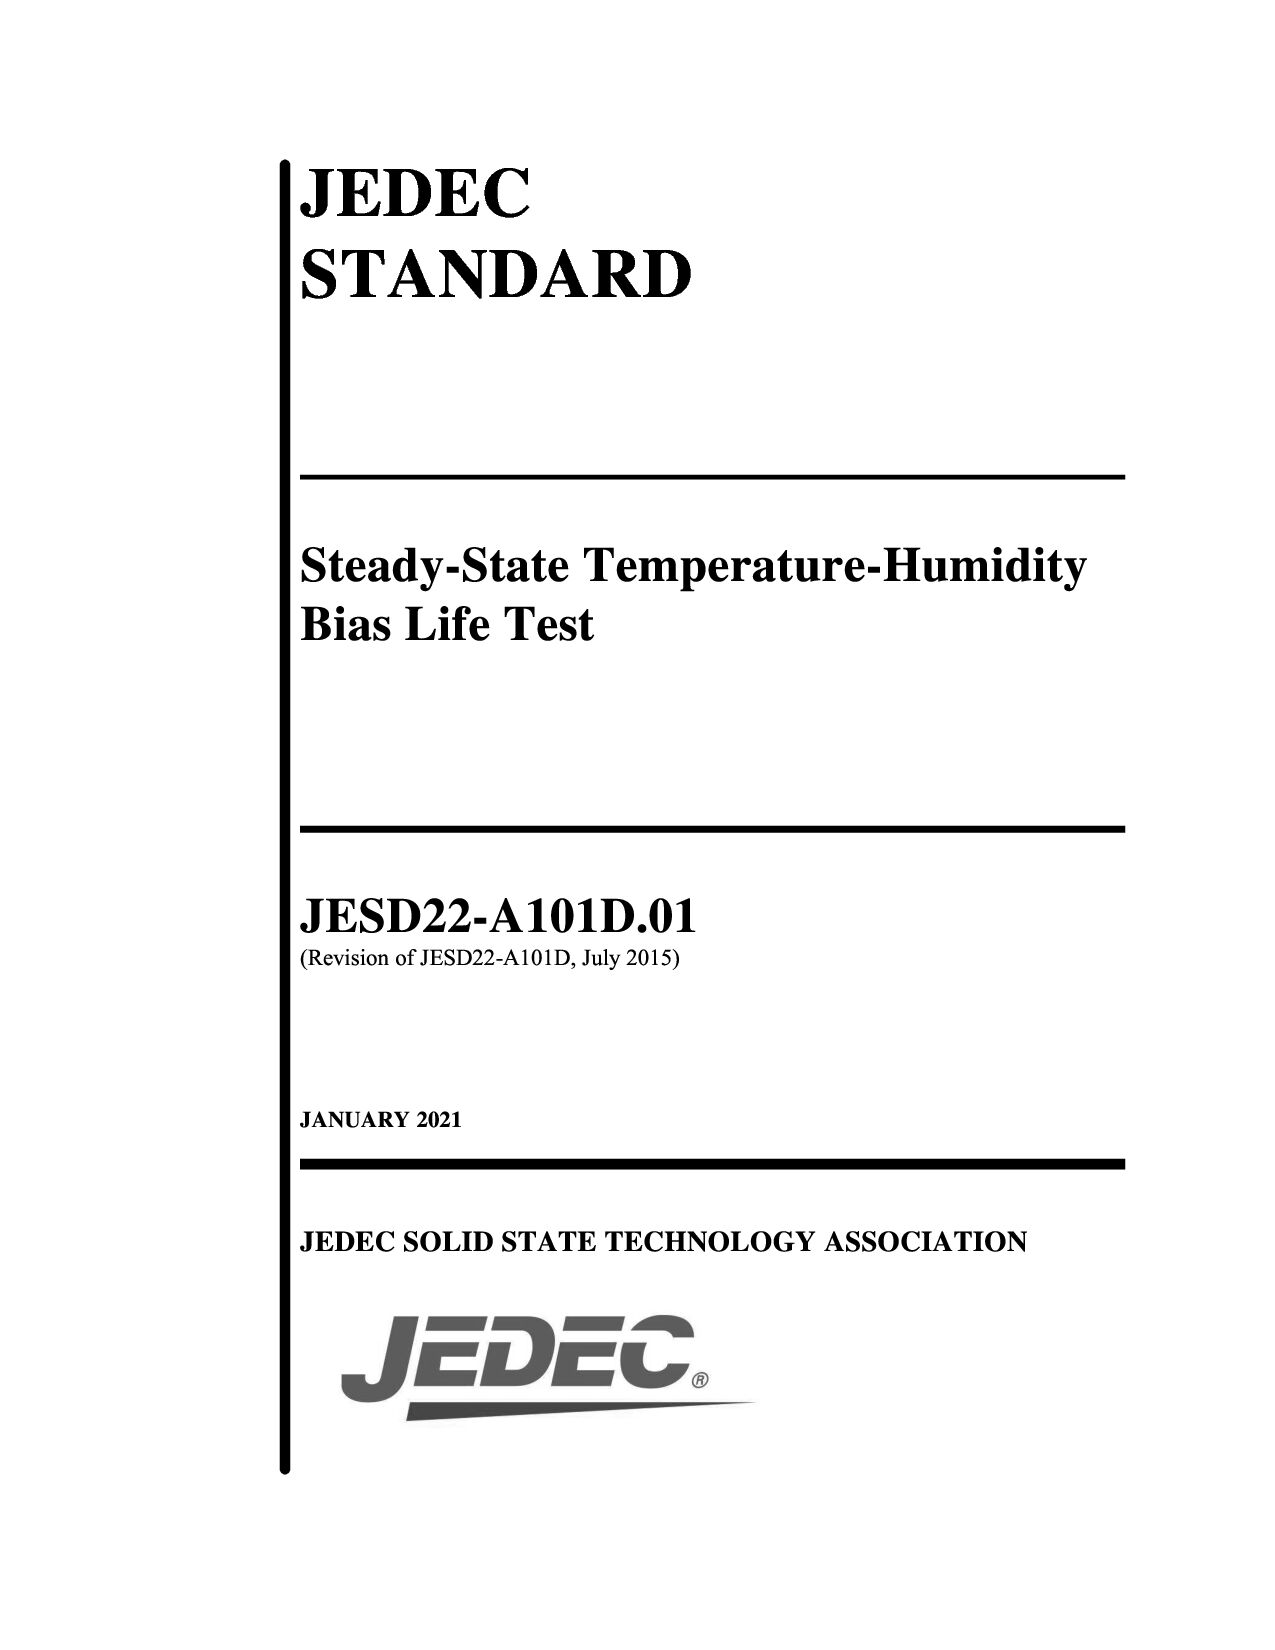 JEDEC JESD22-A101D.01-2021